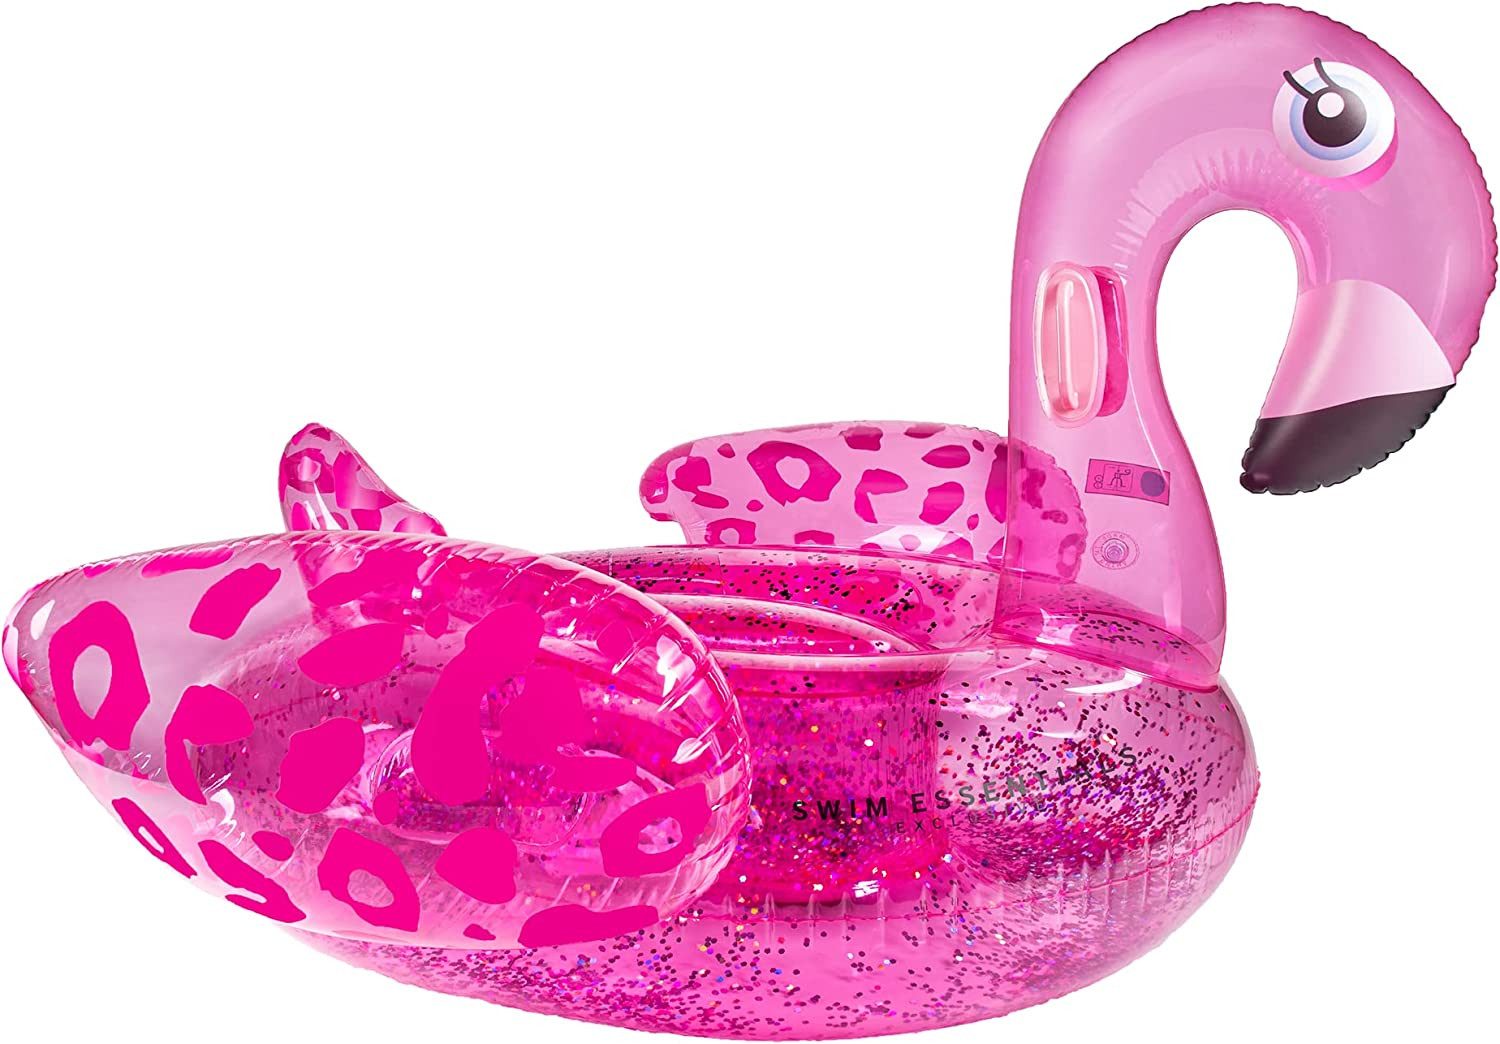 Swim Essentials Luftmatratze Swim Essentials Luxury Ride-on Neon Leopard Flamingo 142x 137 x 97 cm